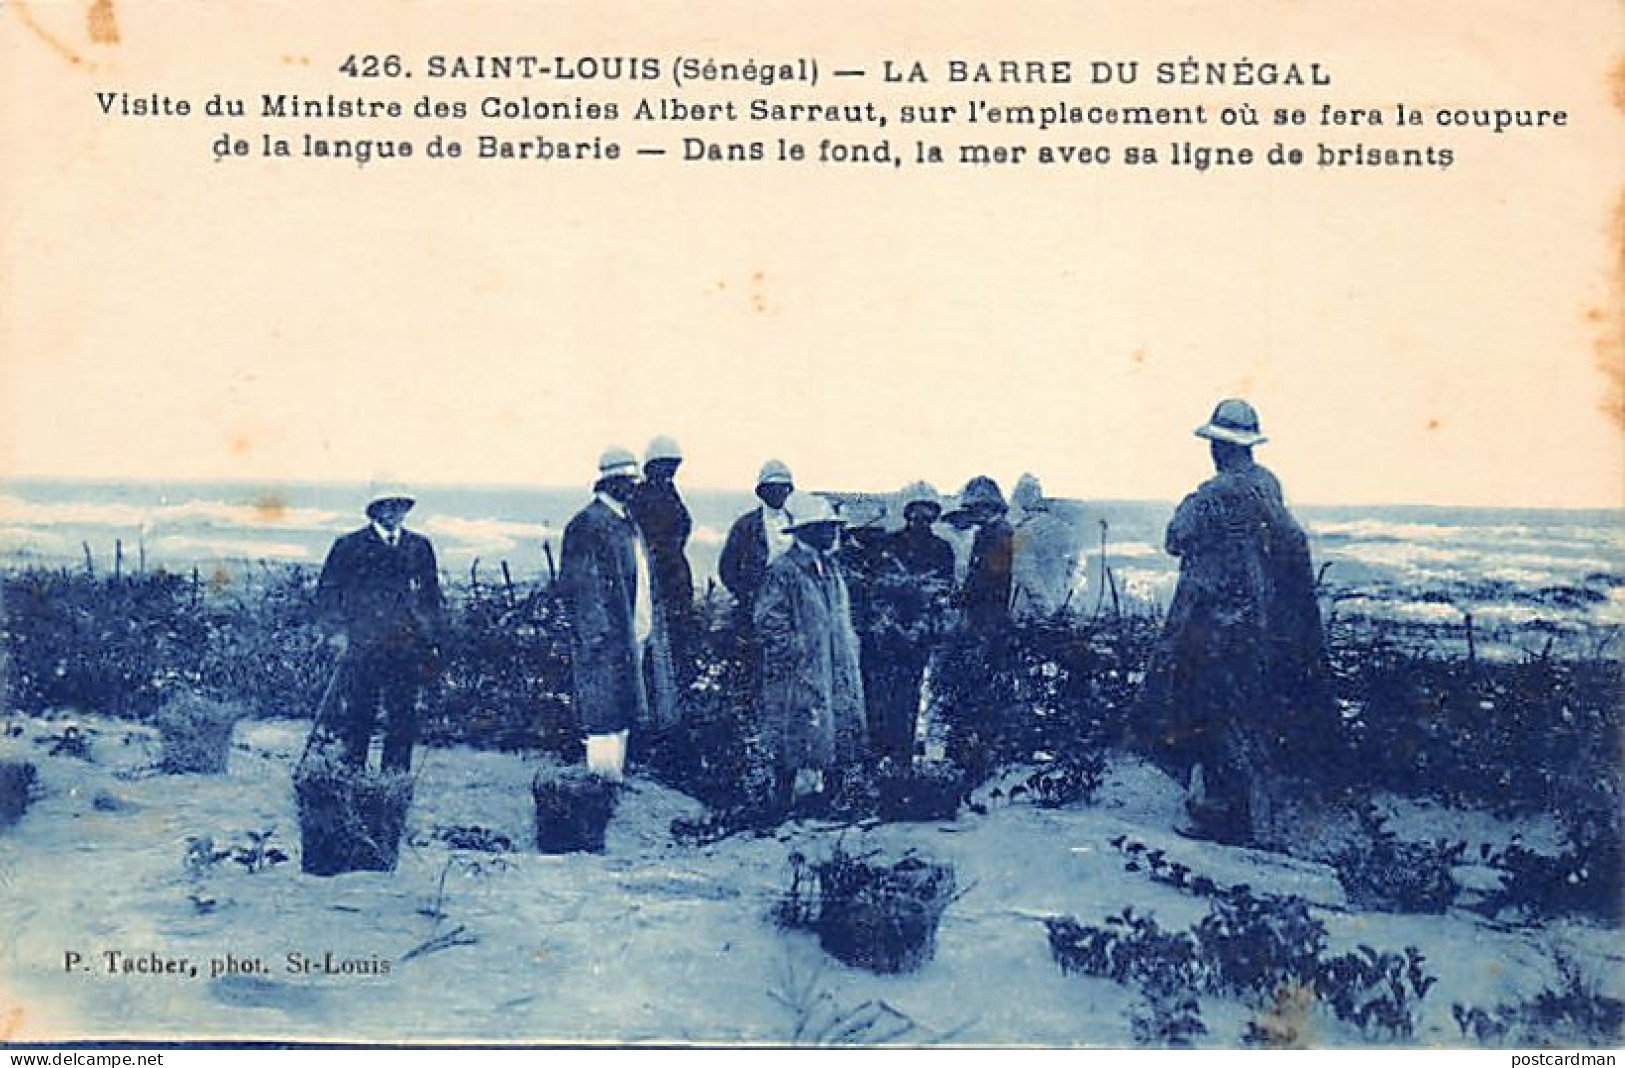 Sénégal - SAINT-LOUIS - Visite De D'Albert Sarrault à L'emplacement De La Future Barre - Ed. P. Tacher 426 - Senegal